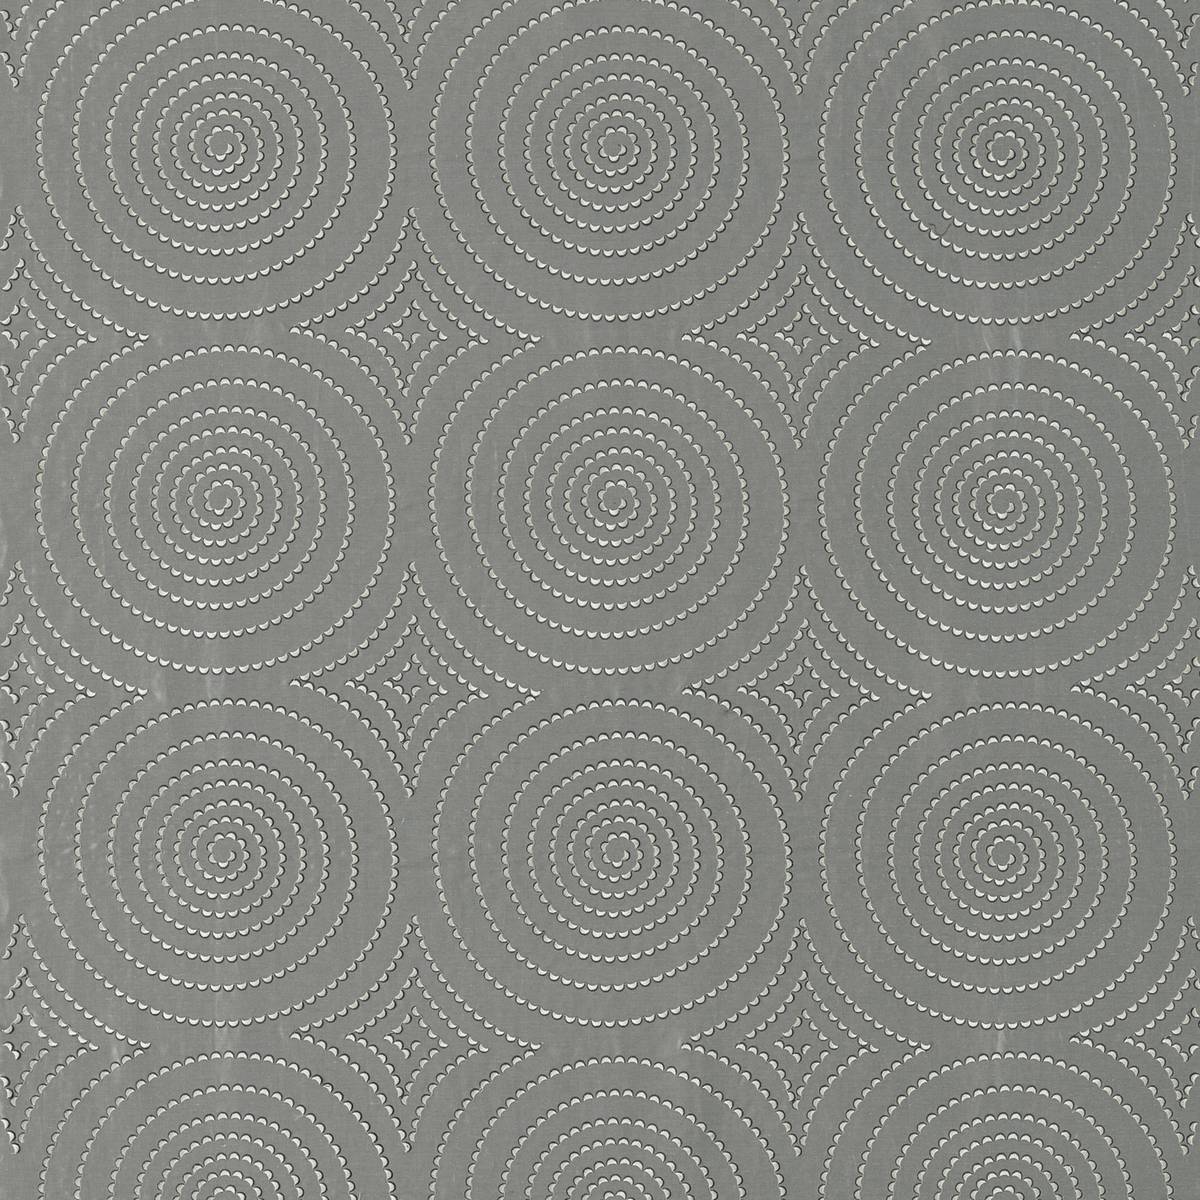 Sakura Steel Fabric by Harlequin